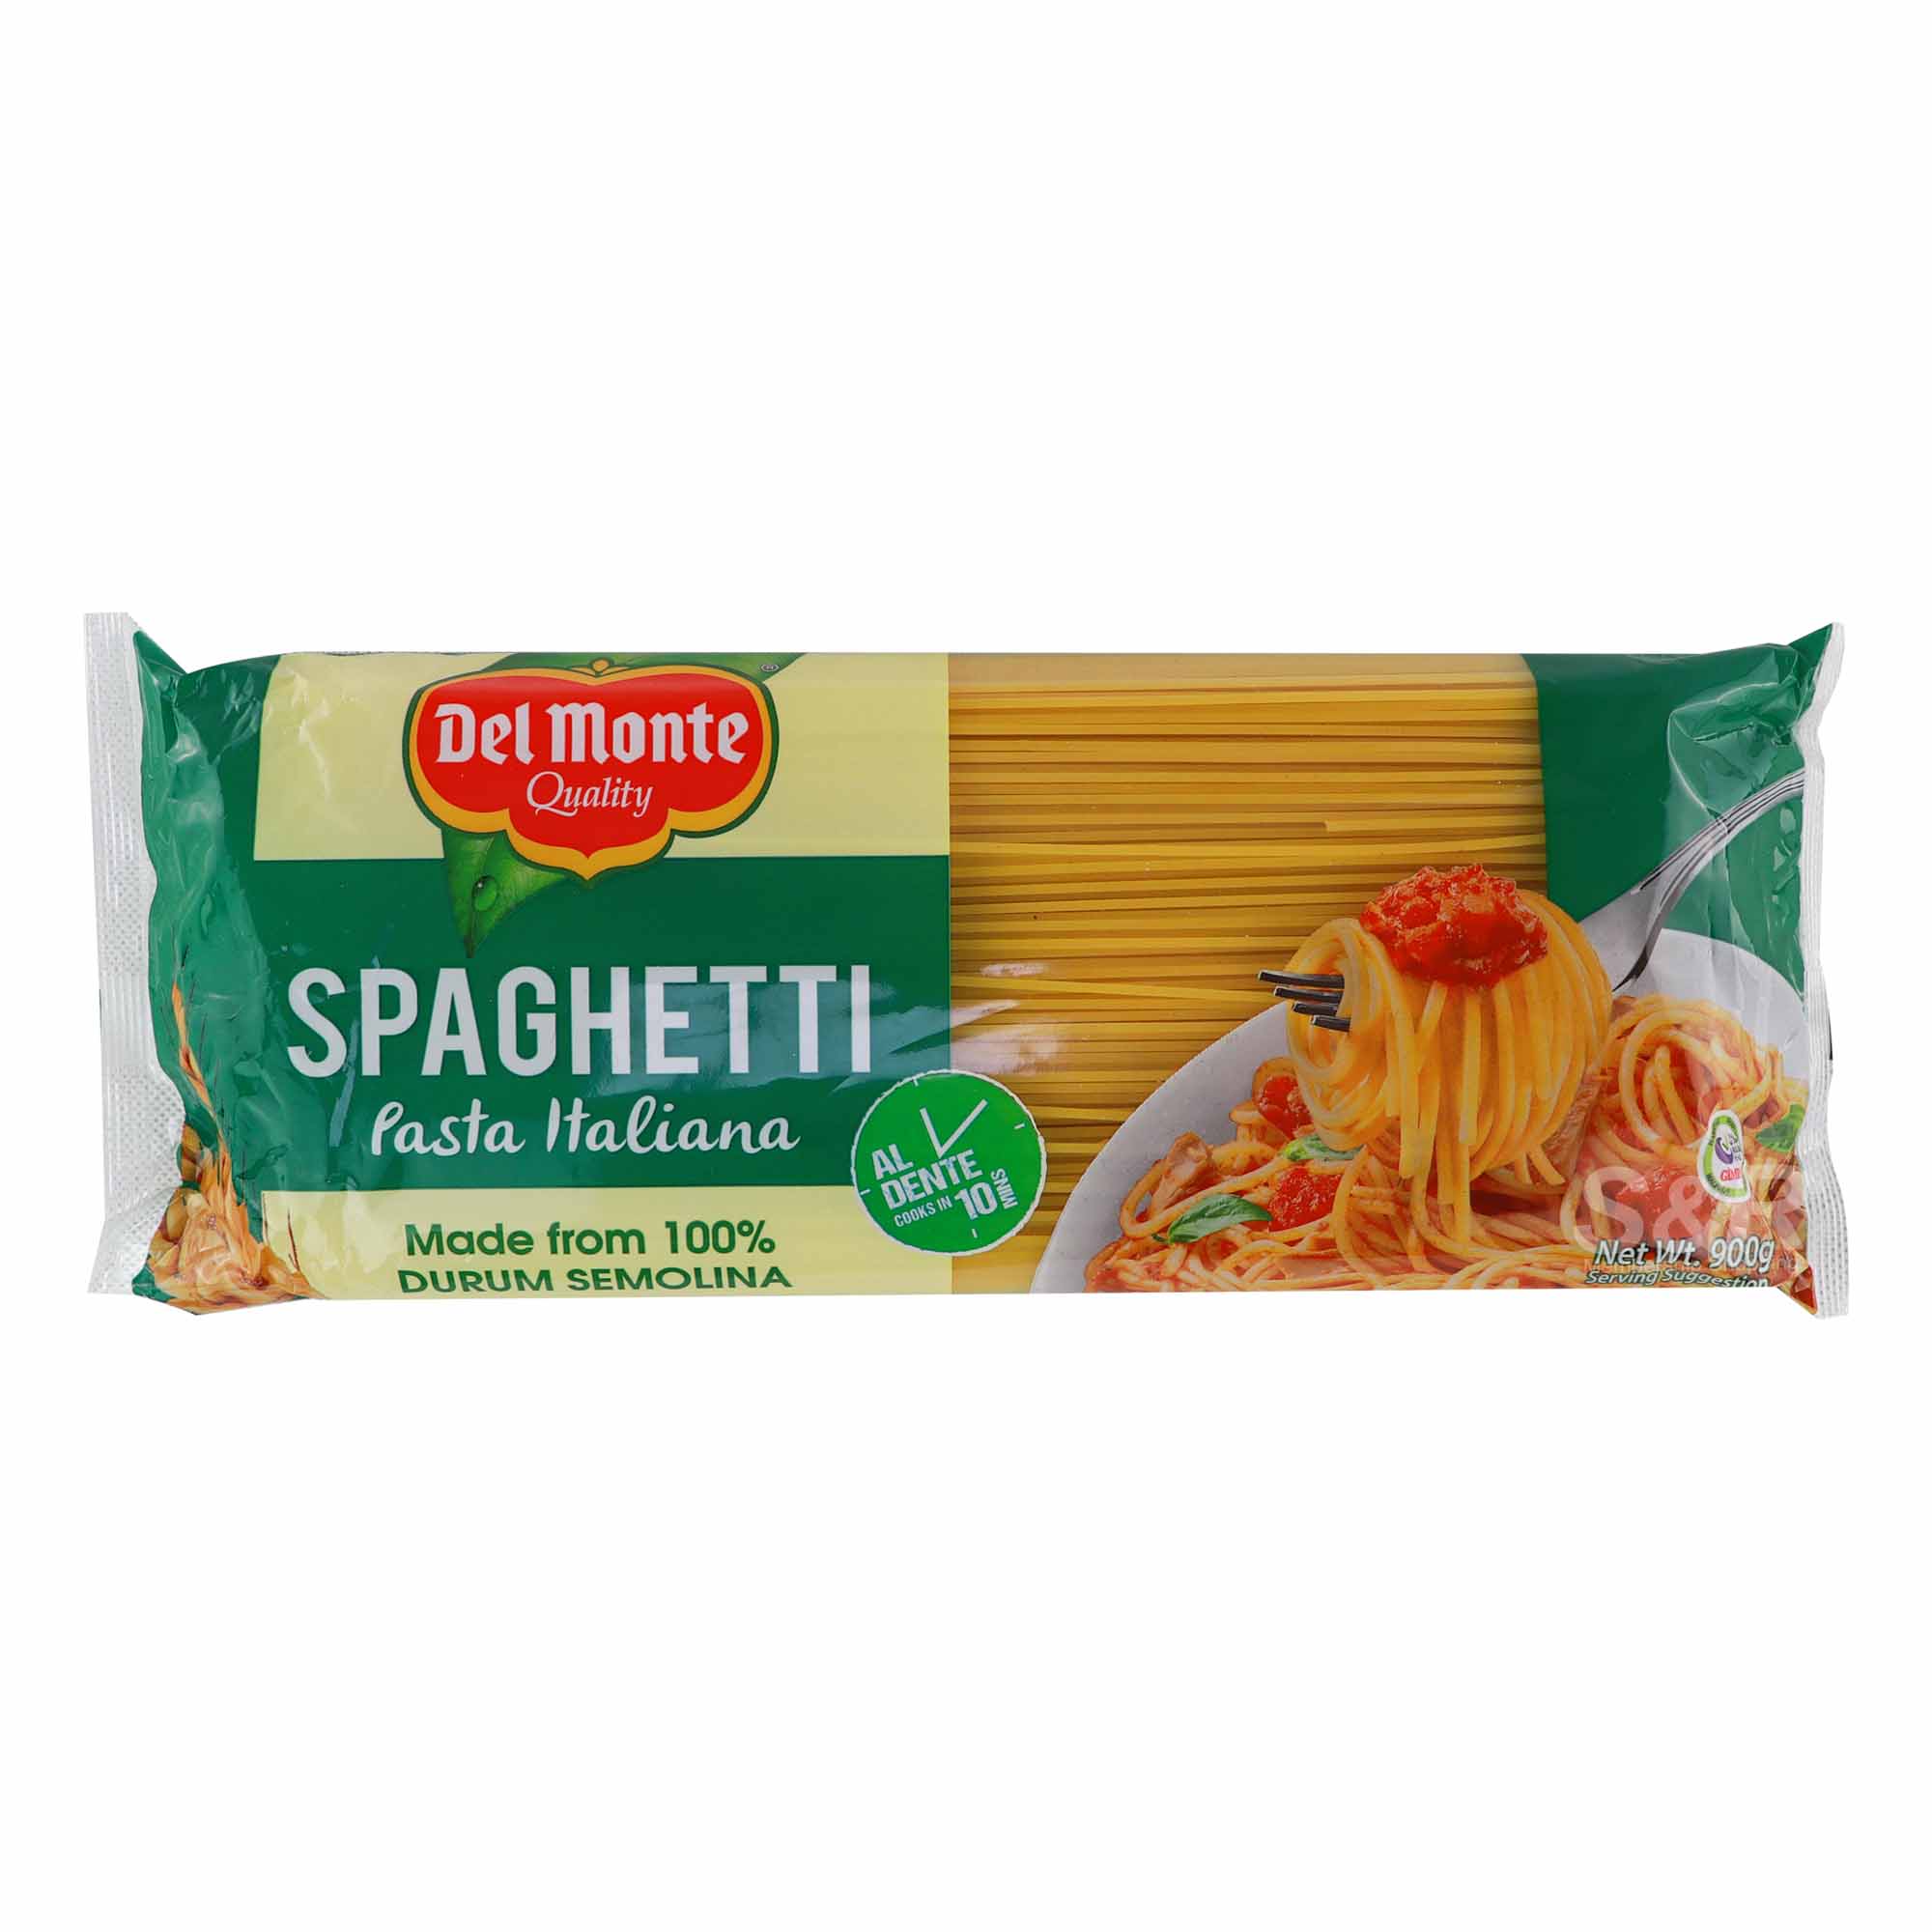 Del Monte Spaghetti Pasta Italiana 900g